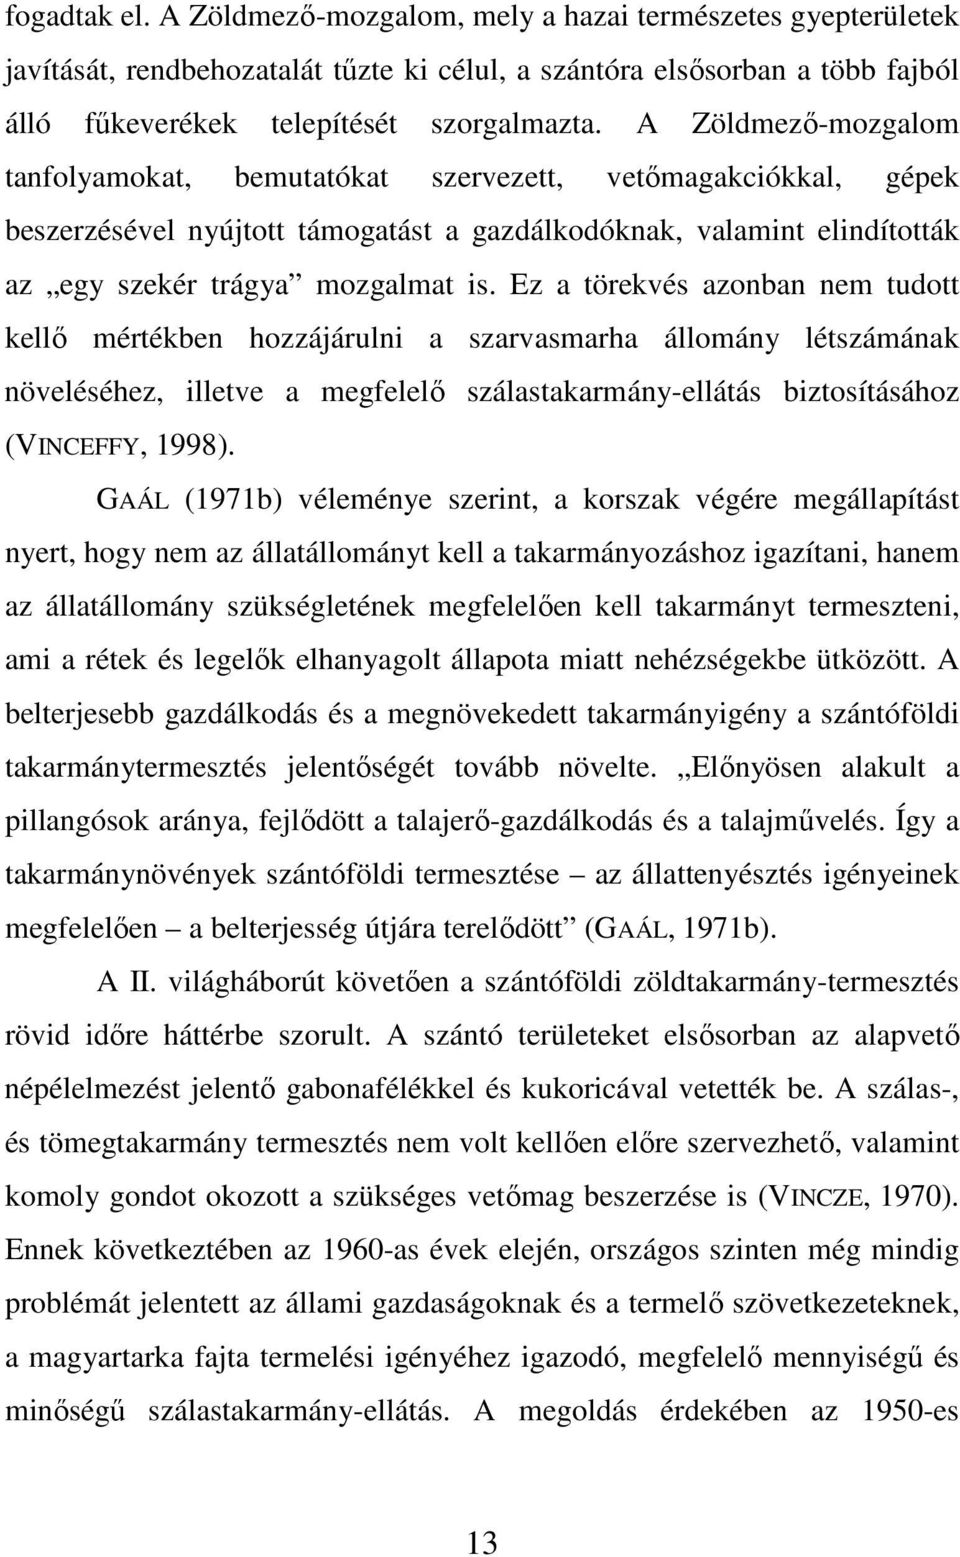 Ez a törekvés azonban nem tudott kellı mértékben hozzájárulni a szarvasmarha állomány létszámának növeléséhez, illetve a megfelelı szálastakarmány-ellátás biztosításához (VINCEFFY, 1998).